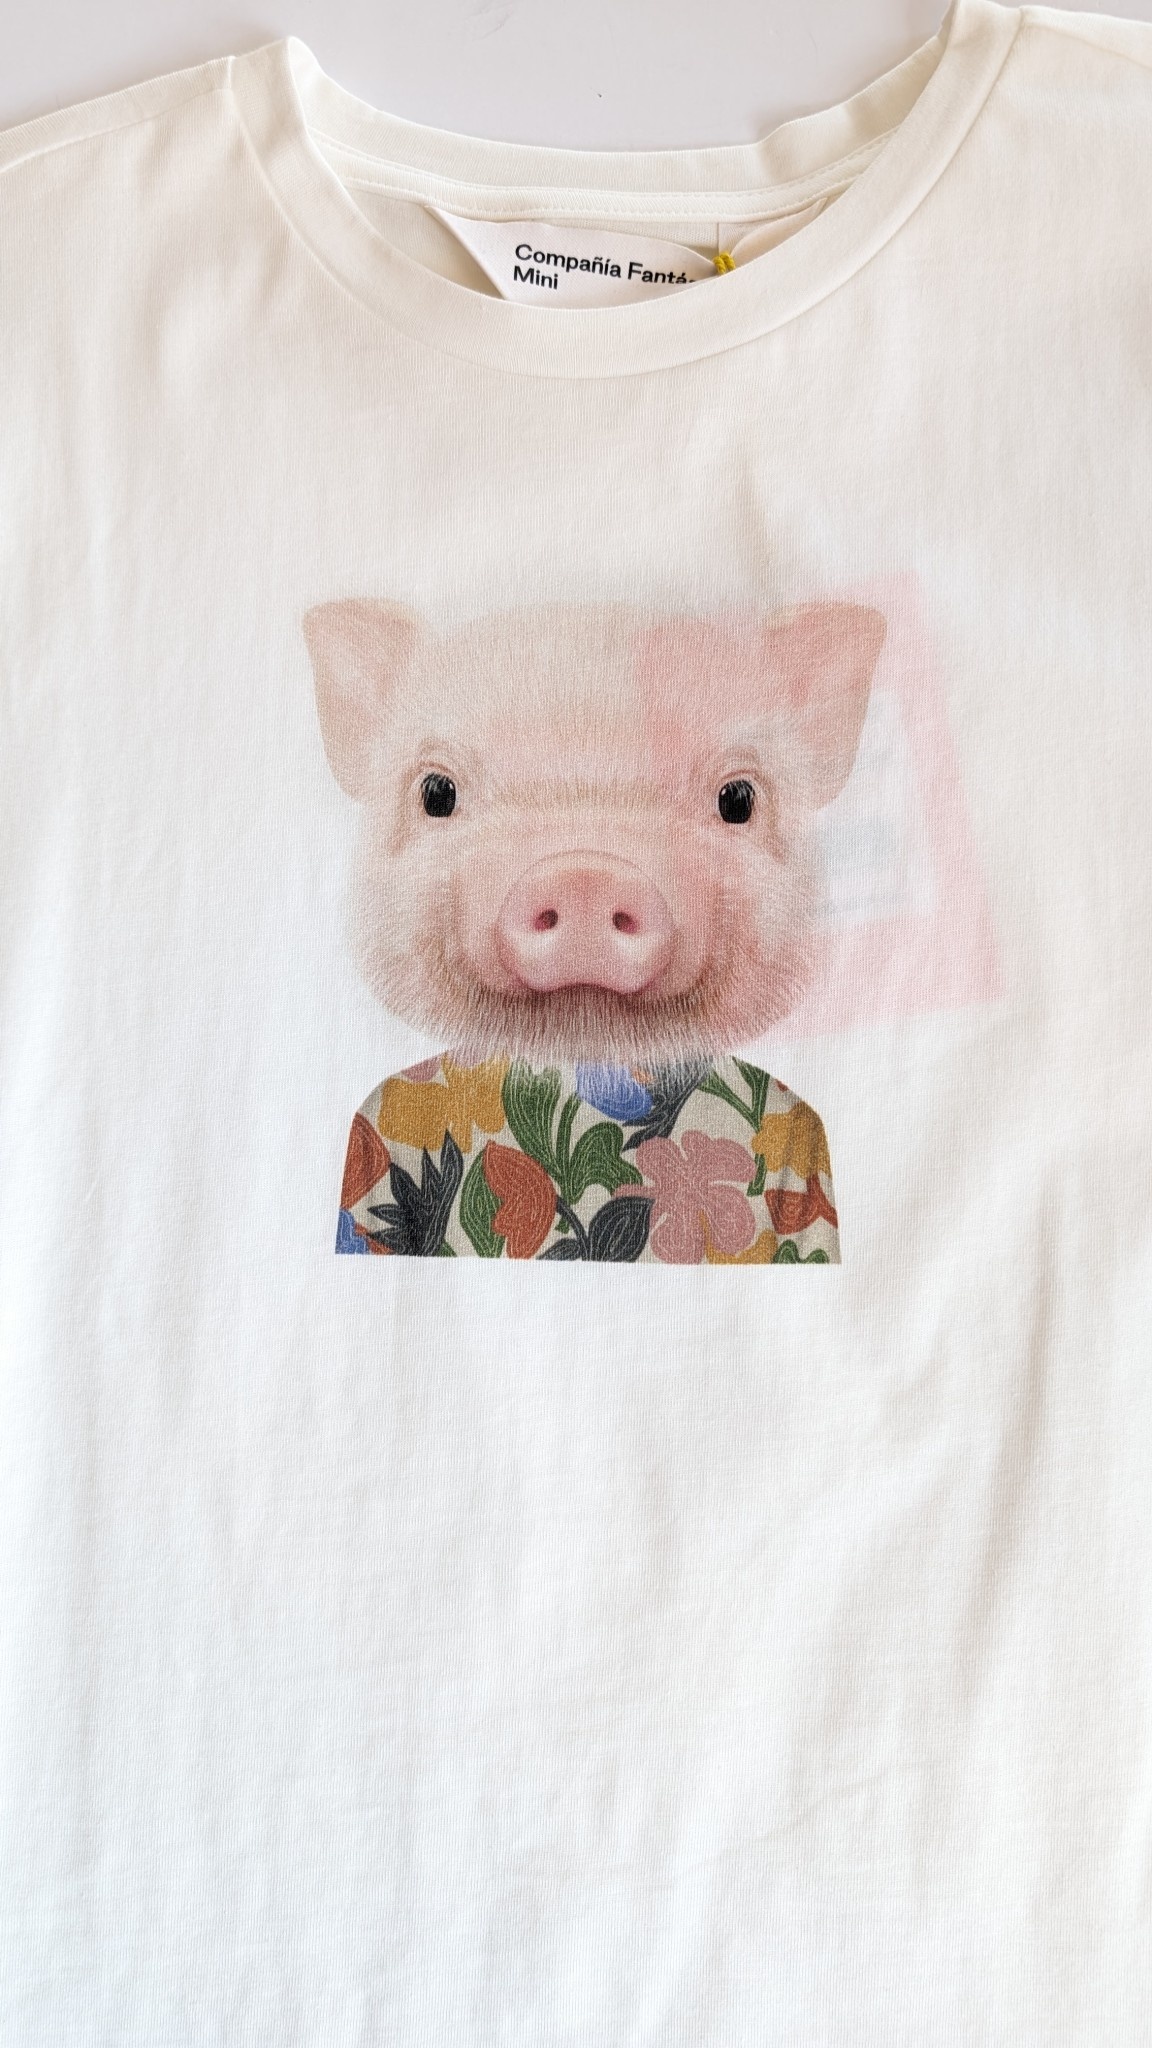 Compania Fantastica Pig w/Flowers S/S T-Shirt